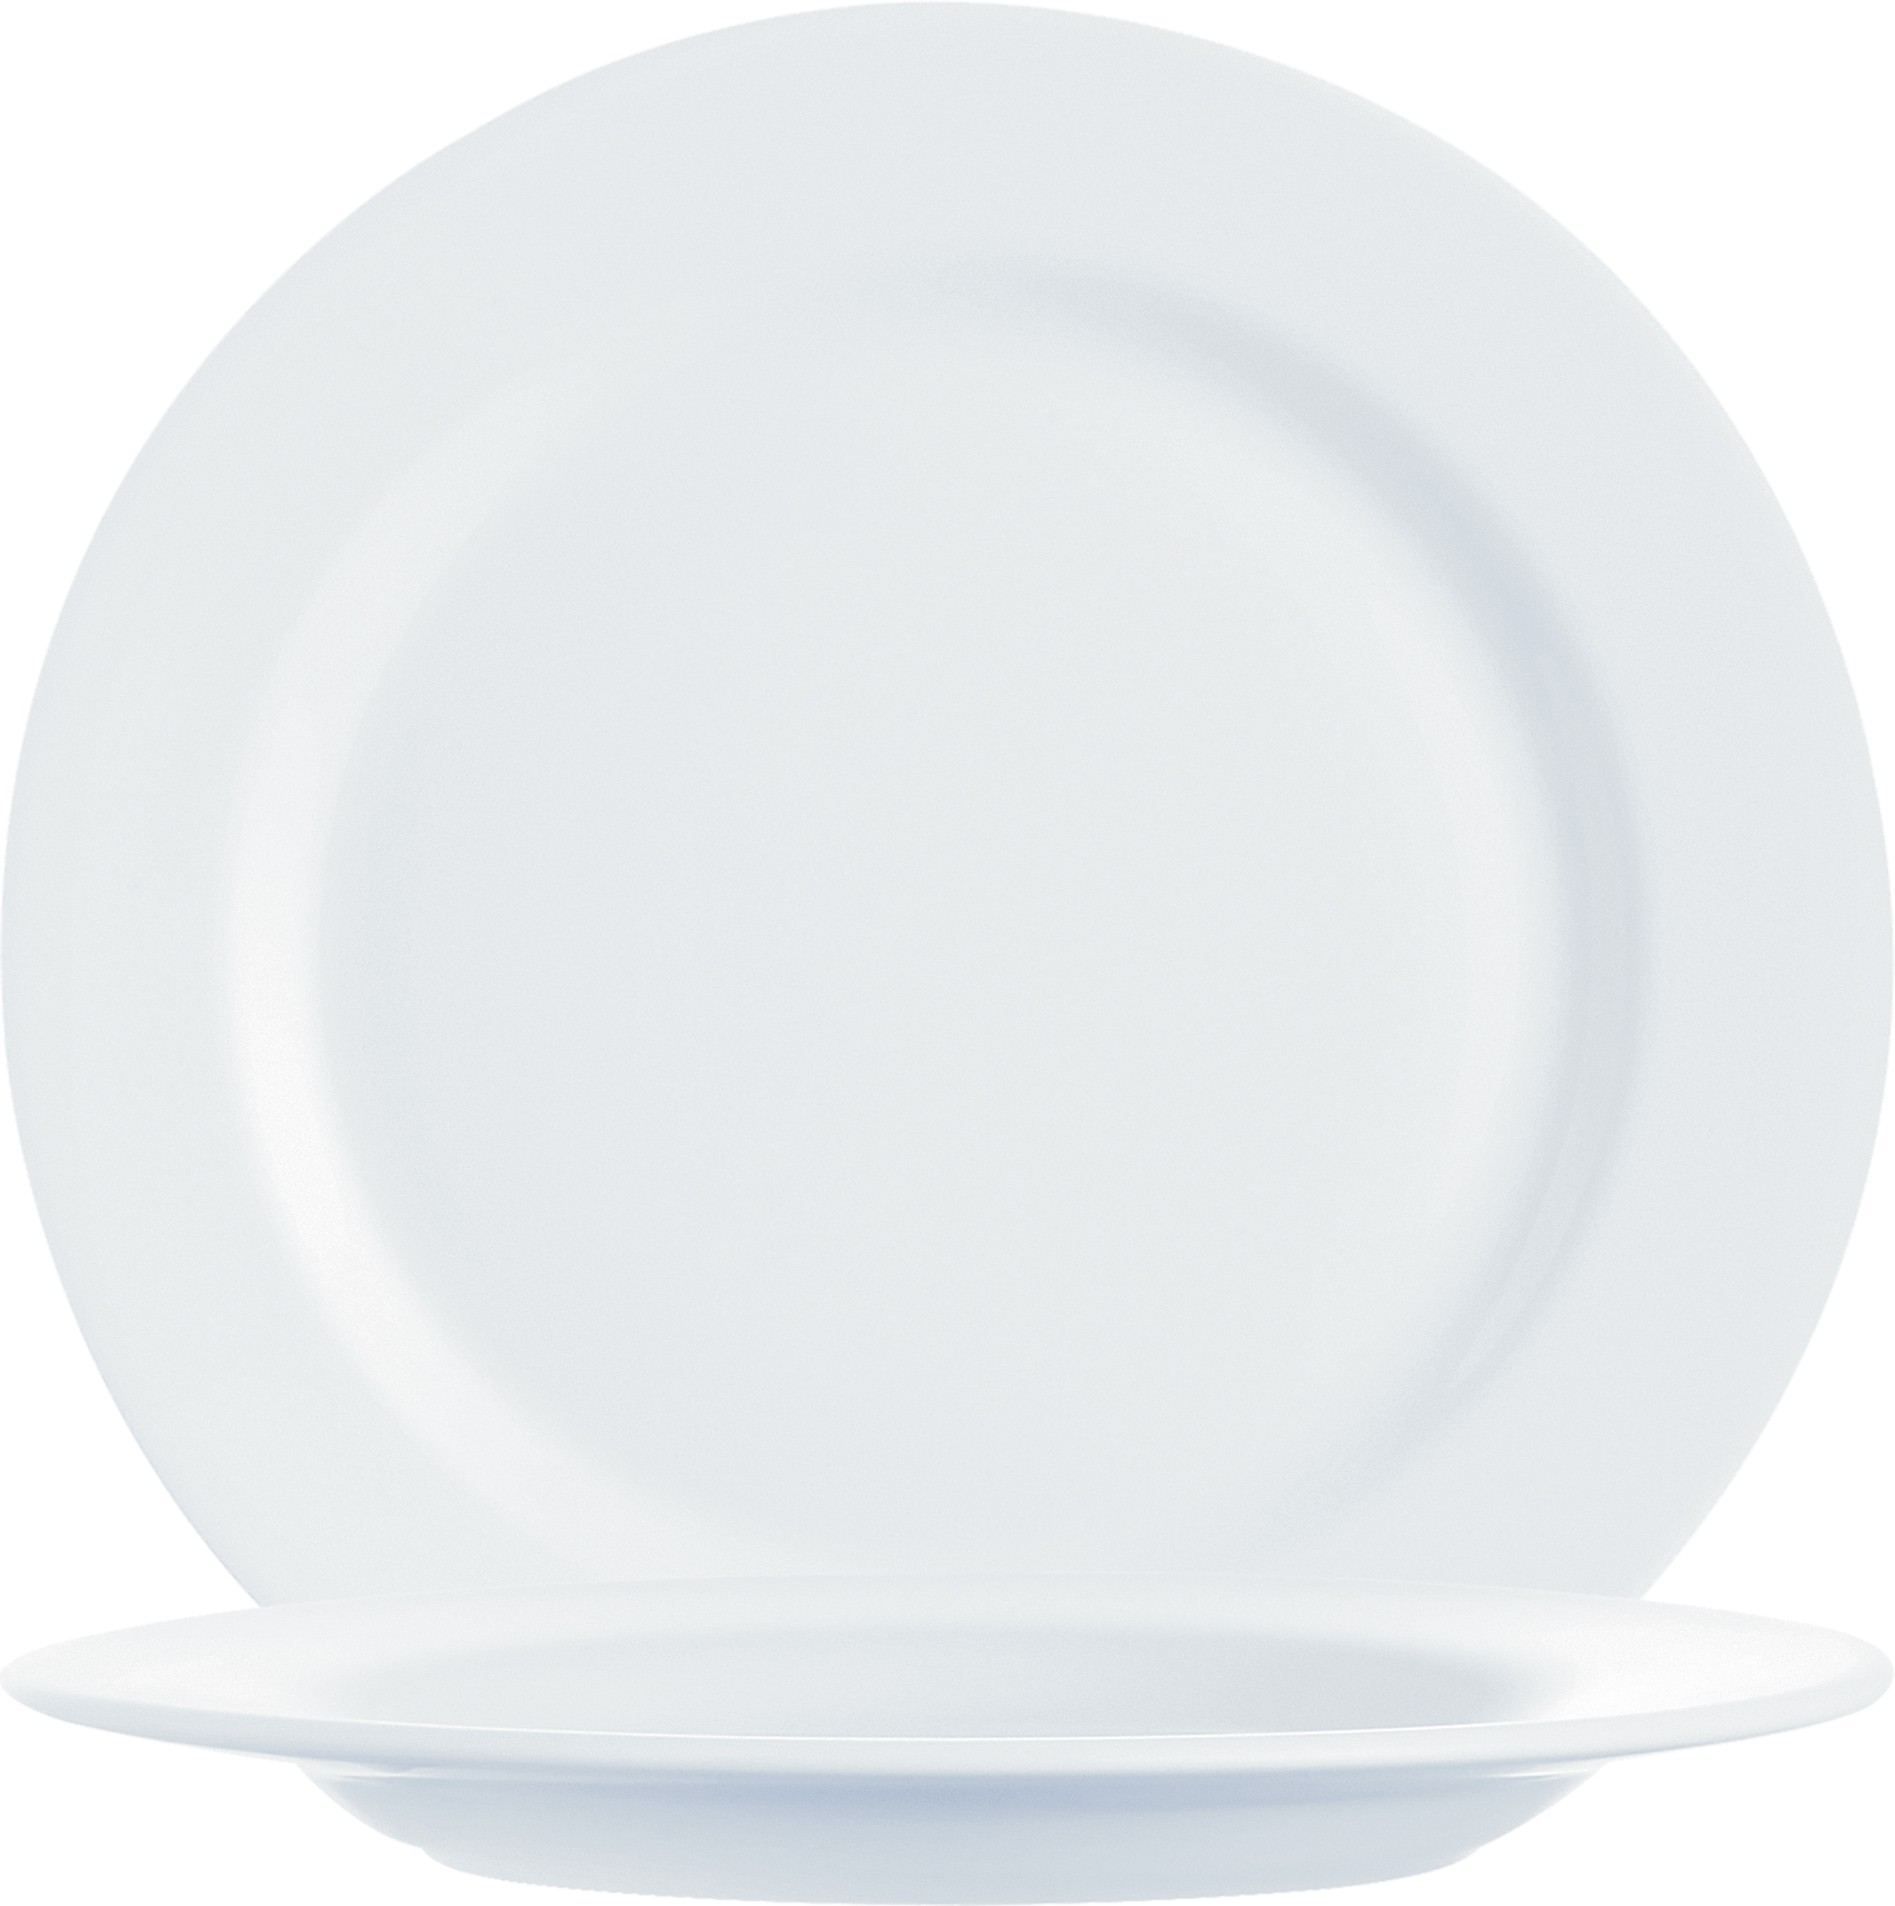 Arcoroc Intensity White Teller flach 24cm, in der Farbe Weiß, aus Opal, Mikrowellen- und Spülmaschinen geeignet